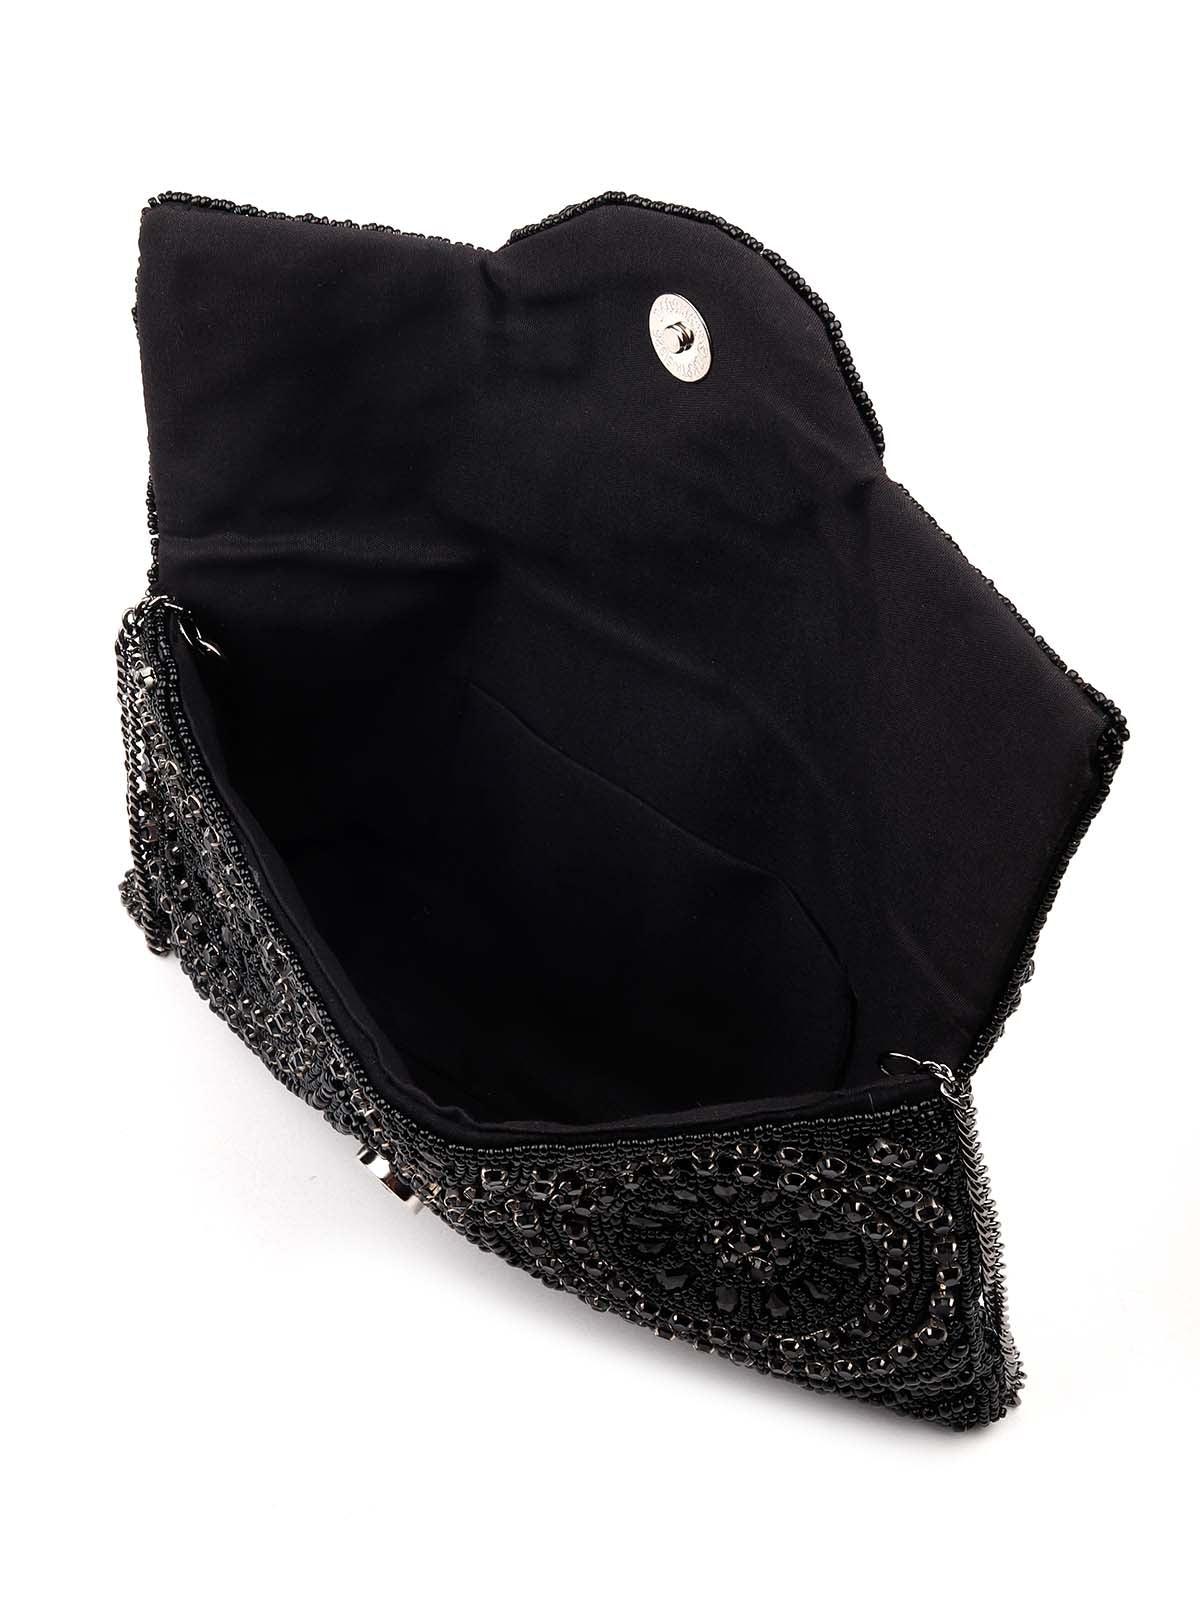 Jet Black gorgeous embellished sling bag-new298 - Odette